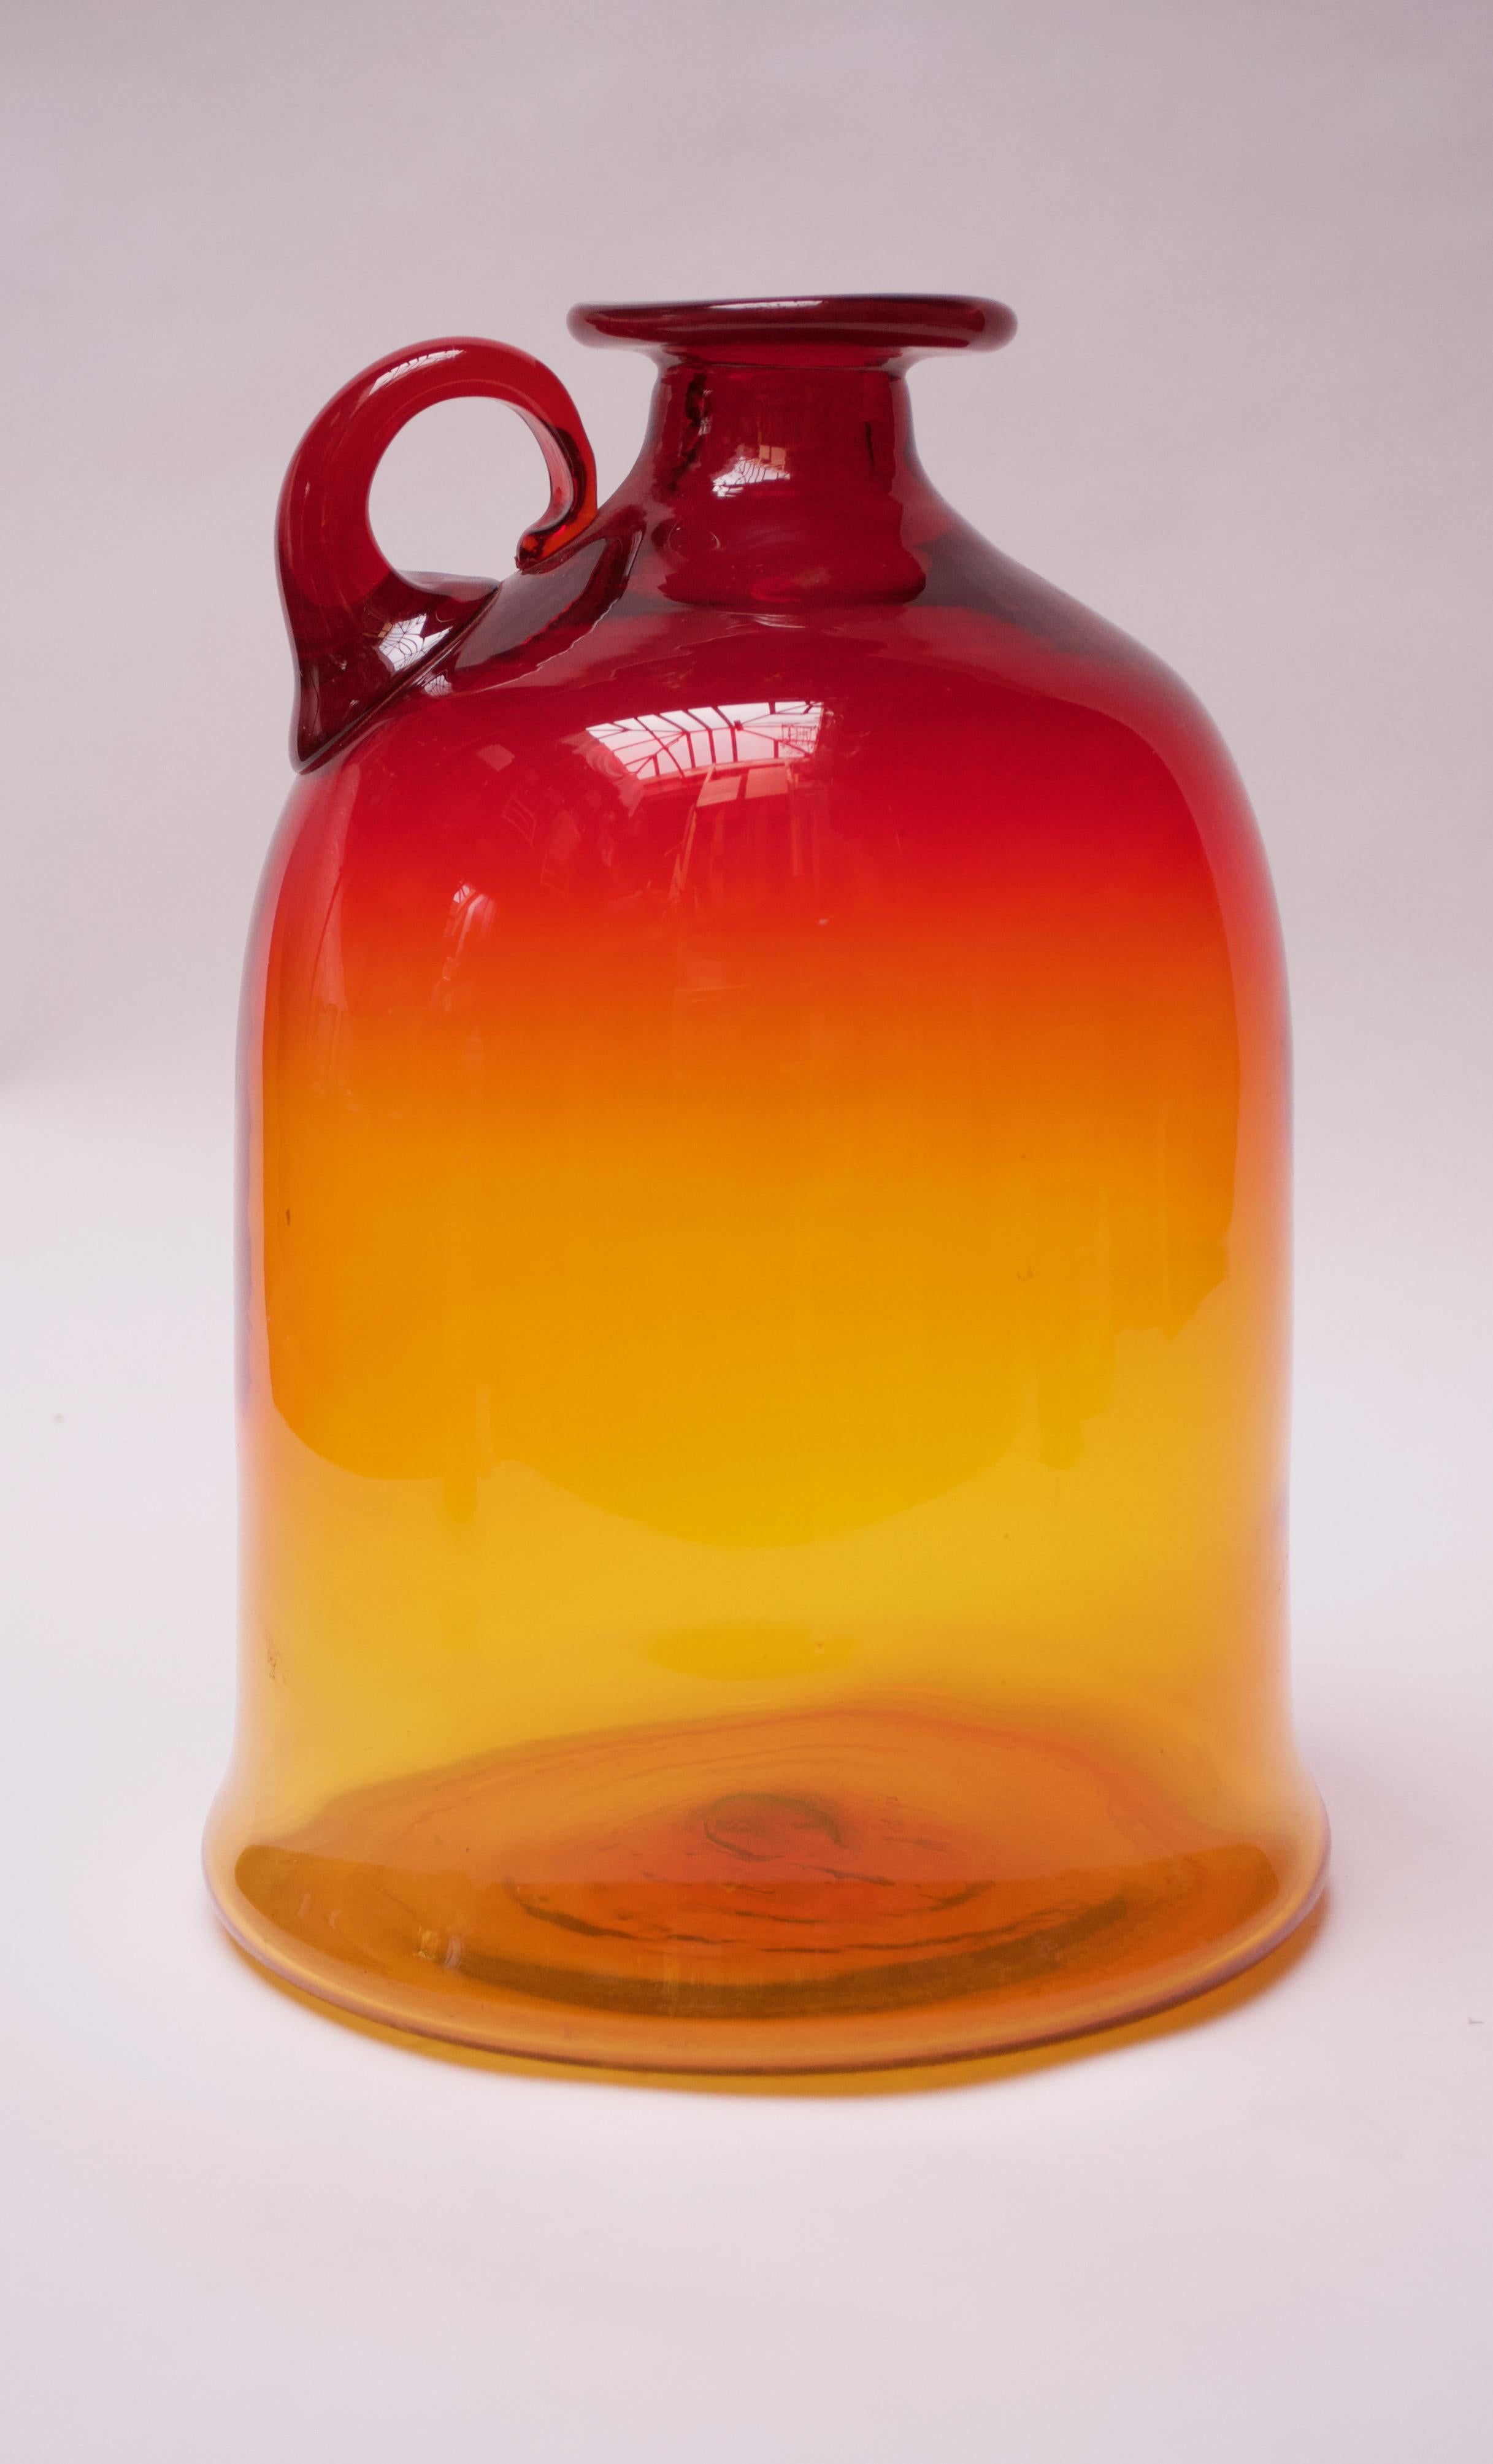 Geblasener Glaskrug, entworfen von John Nickerson und hergestellt von Blenko. Dieses Design erschien erstmals 1972 im Blenko-Katalog unter der Modellnummer 7226S. Großes Format und attraktive bernsteinfarbene / mandarinenfarbene Palette mit rotem